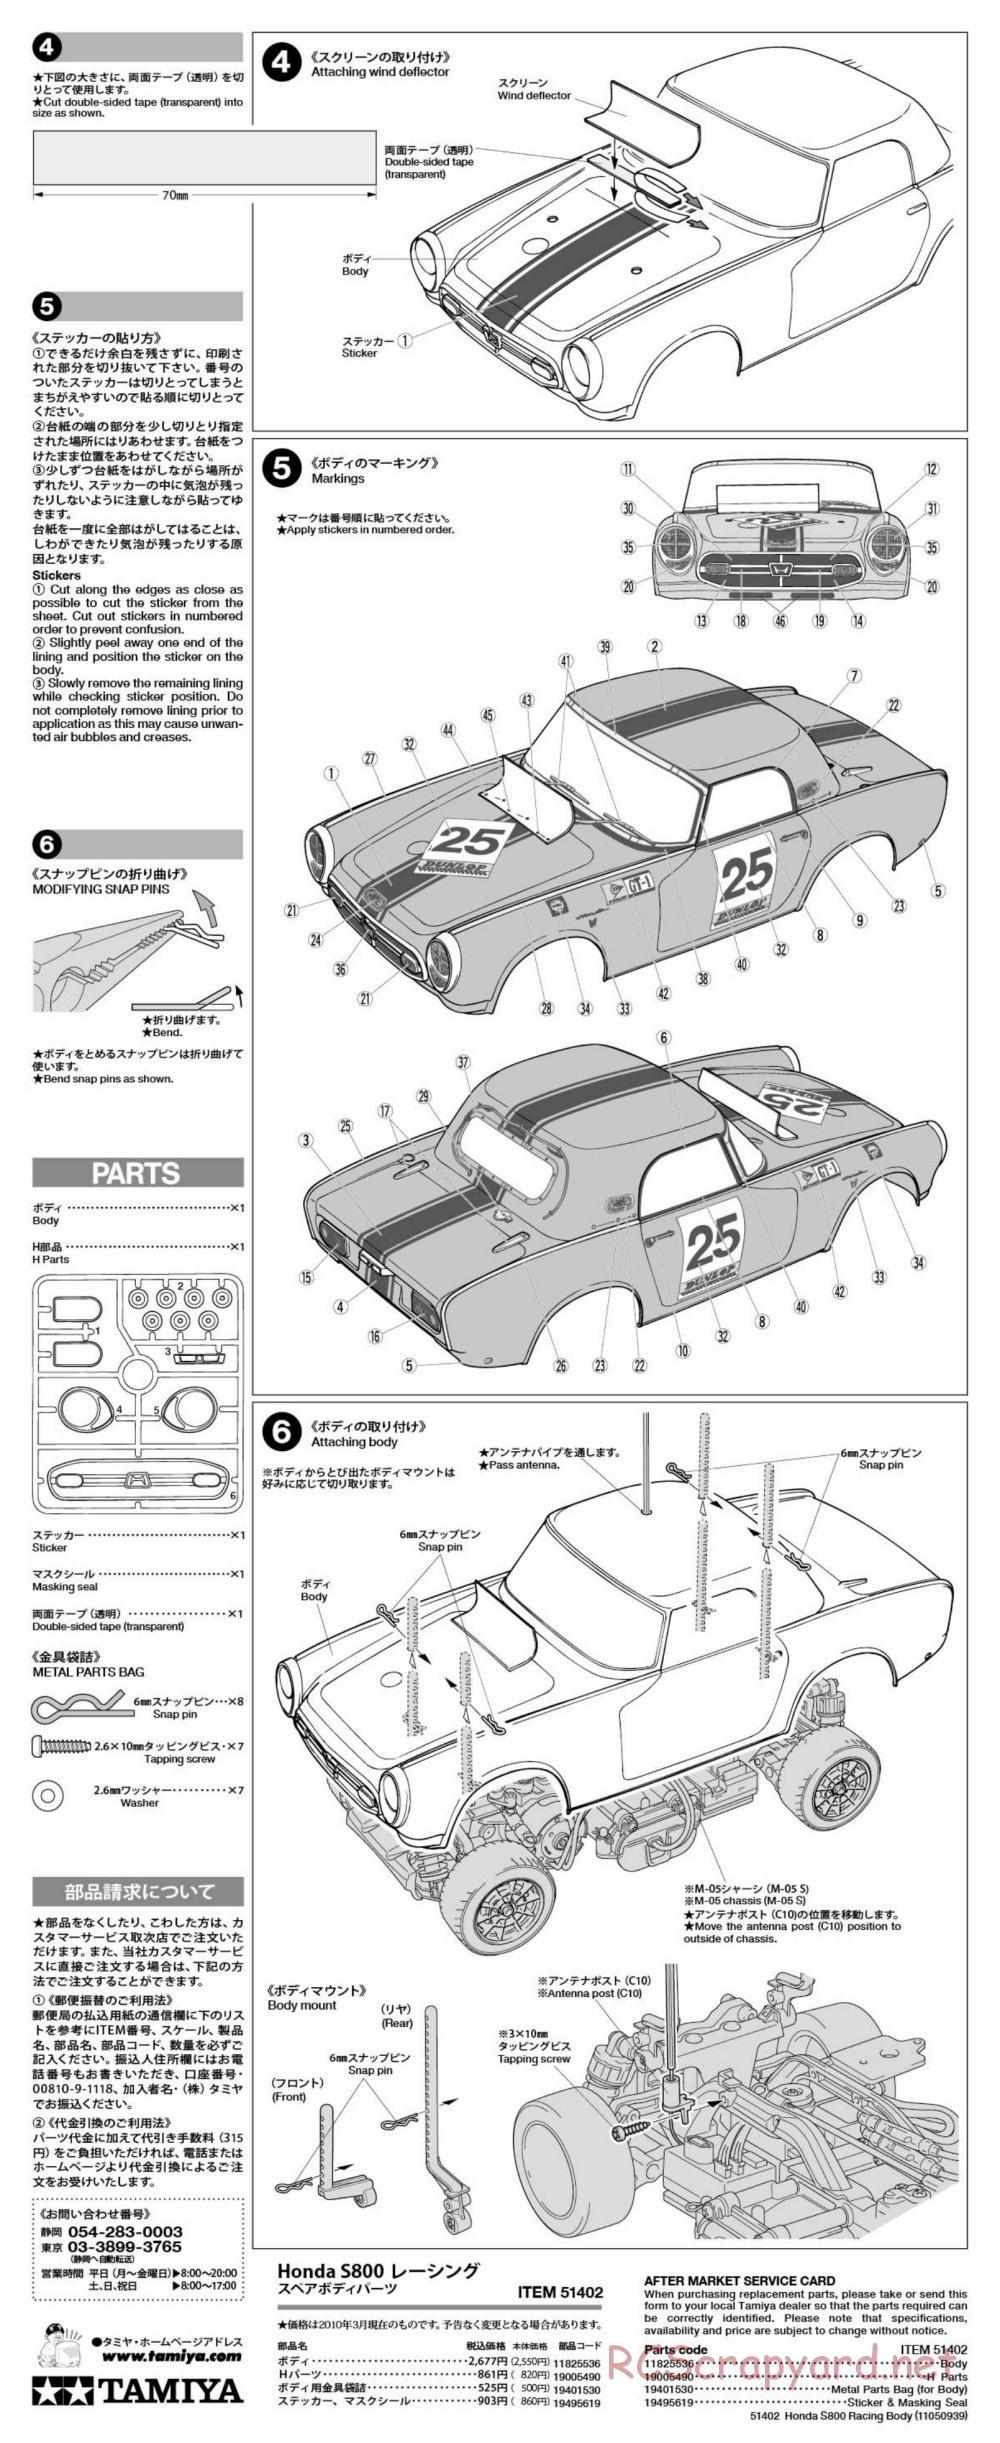 Tamiya - Honda S800 Racing - M-05 Chassis - Body Manual - Page 2